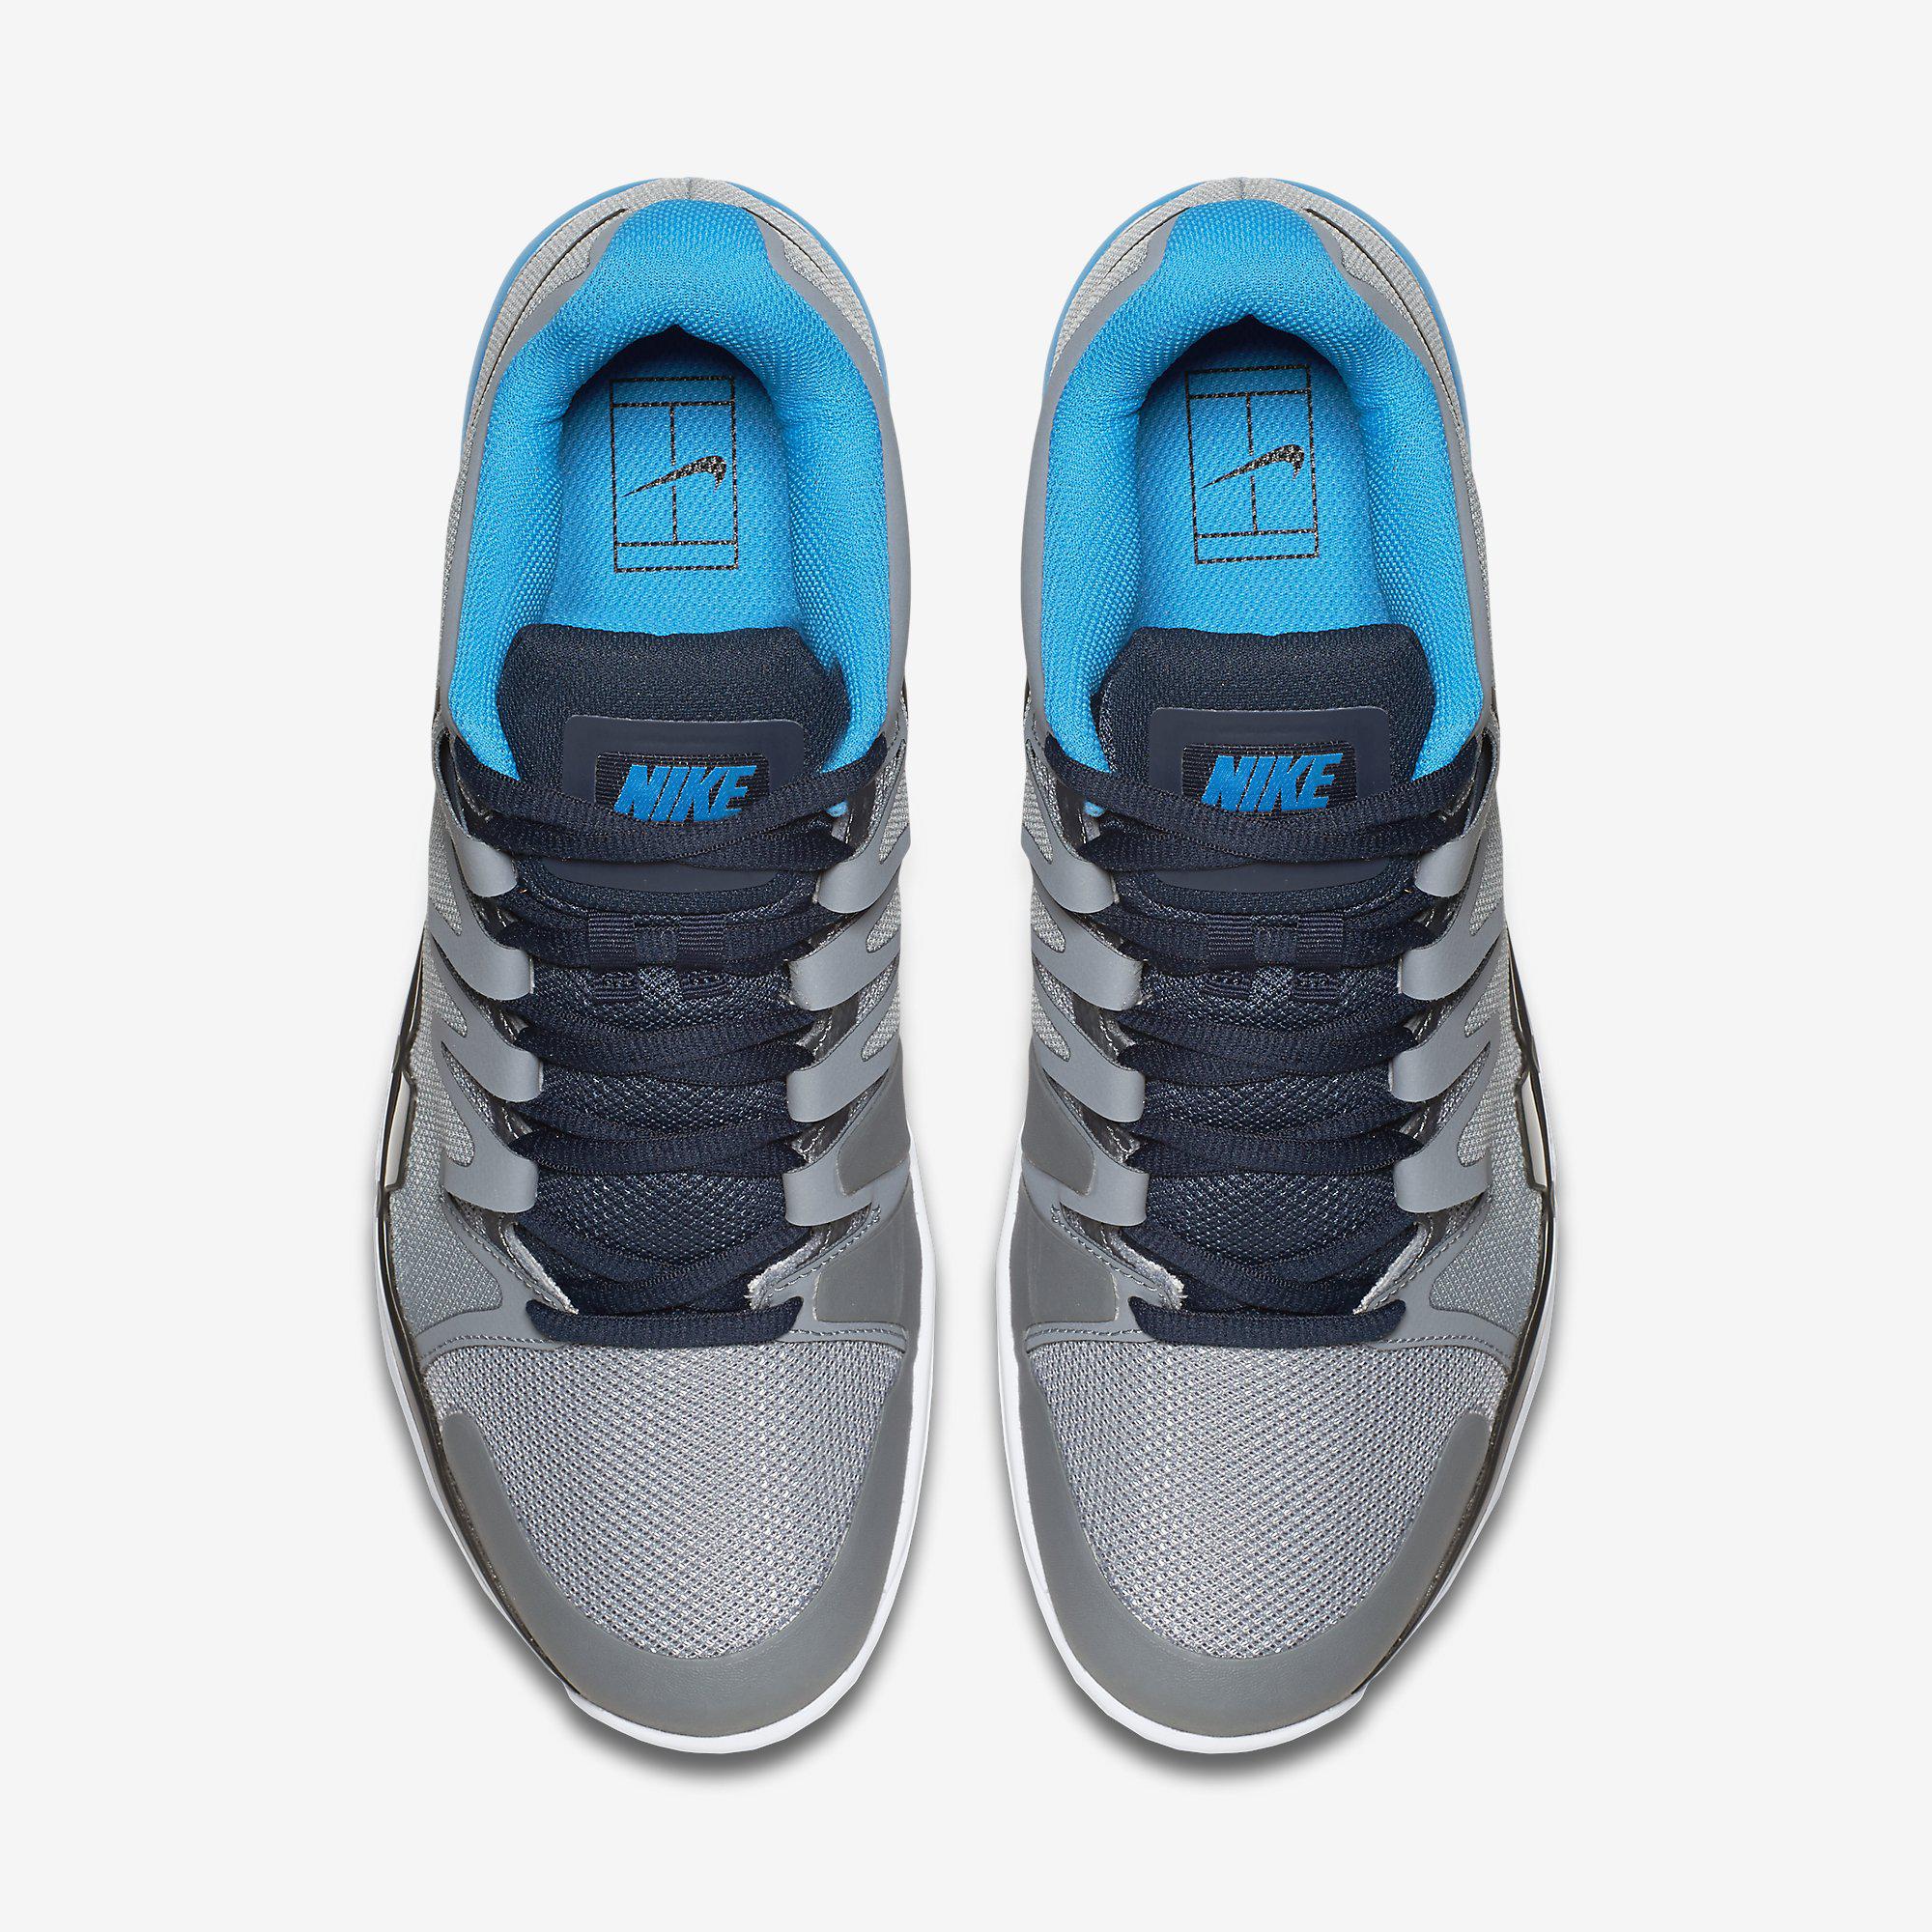 Nike Mens Zoom Vapor 9.5 Tour Tennis Shoes - Grey/Blue - Tennisnuts.com